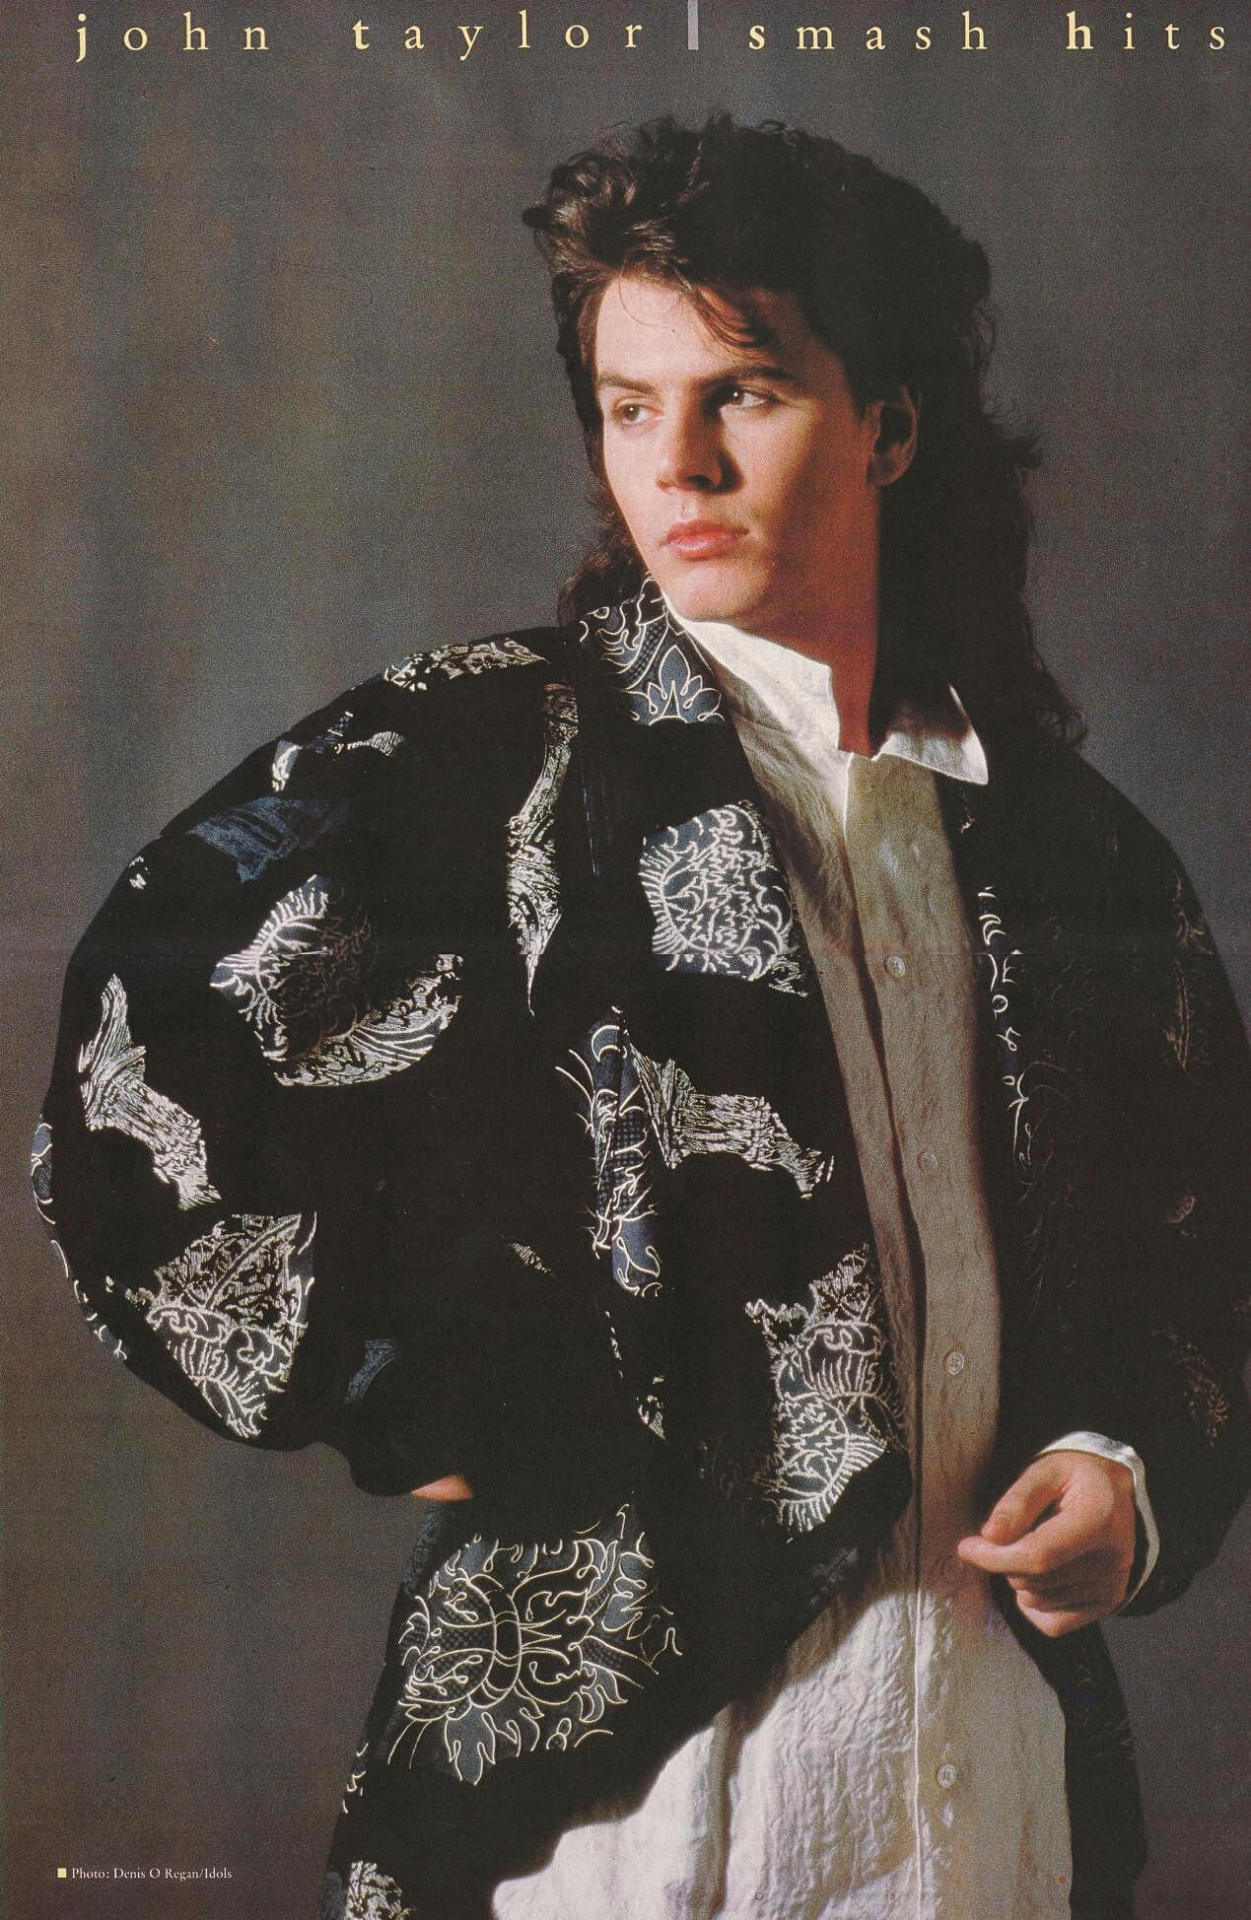 <p>John Taylor (Duran Duran) Smash Hits poster from Feb 1986.</p>